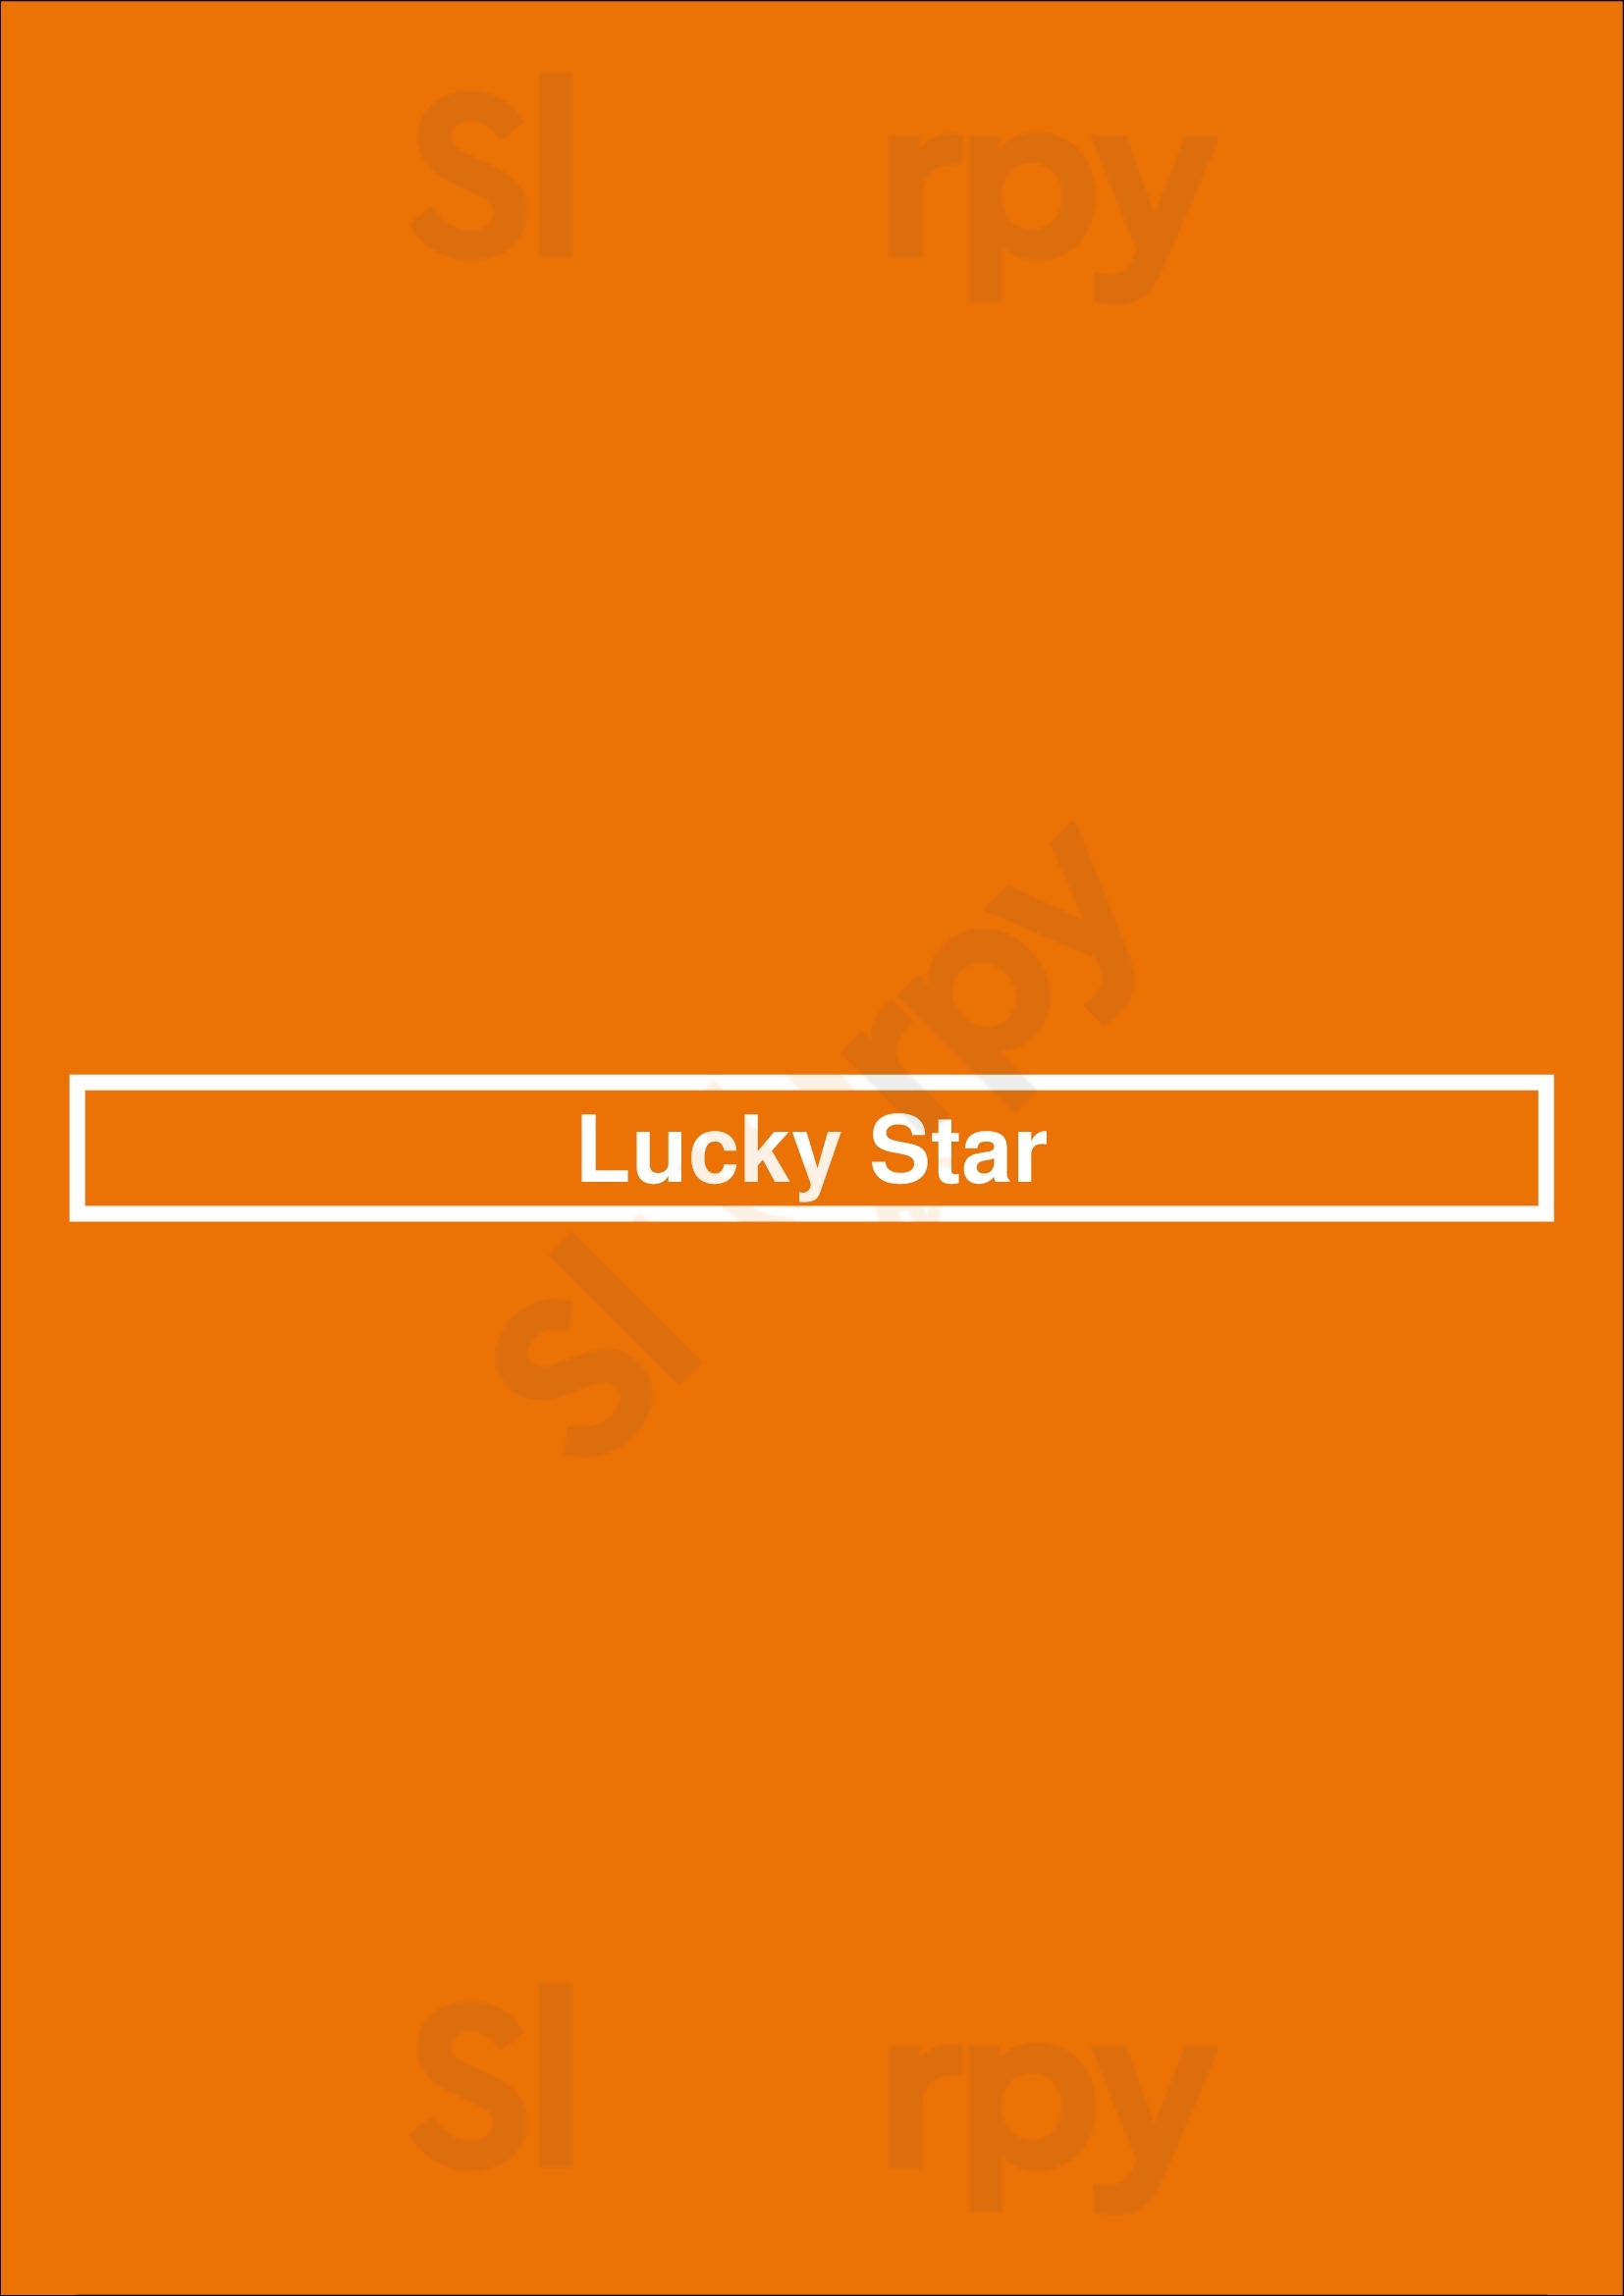 Lucky Star Coventry Menu - 1